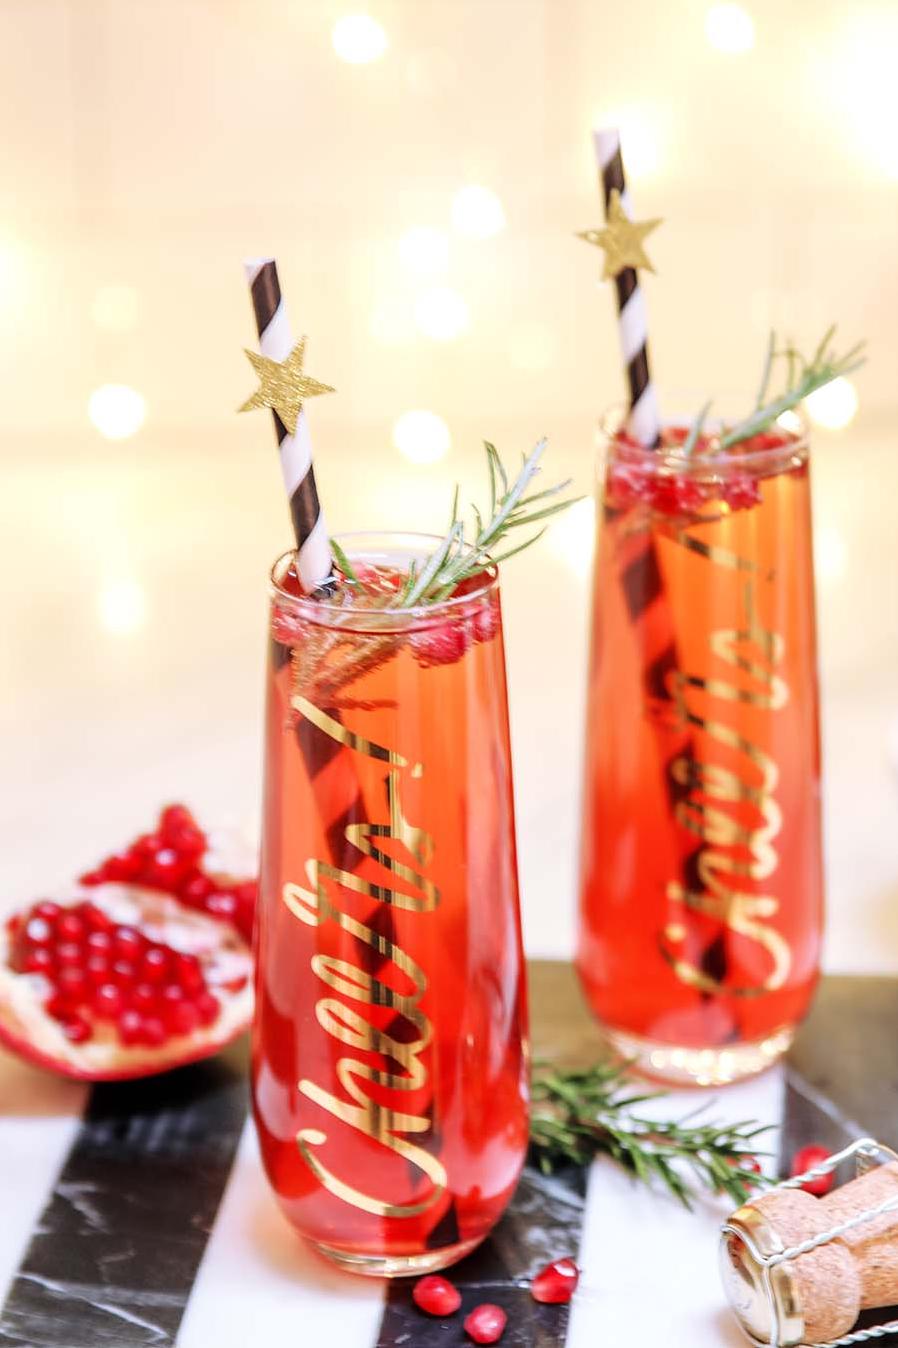  A festive drink to pop up any celebration!